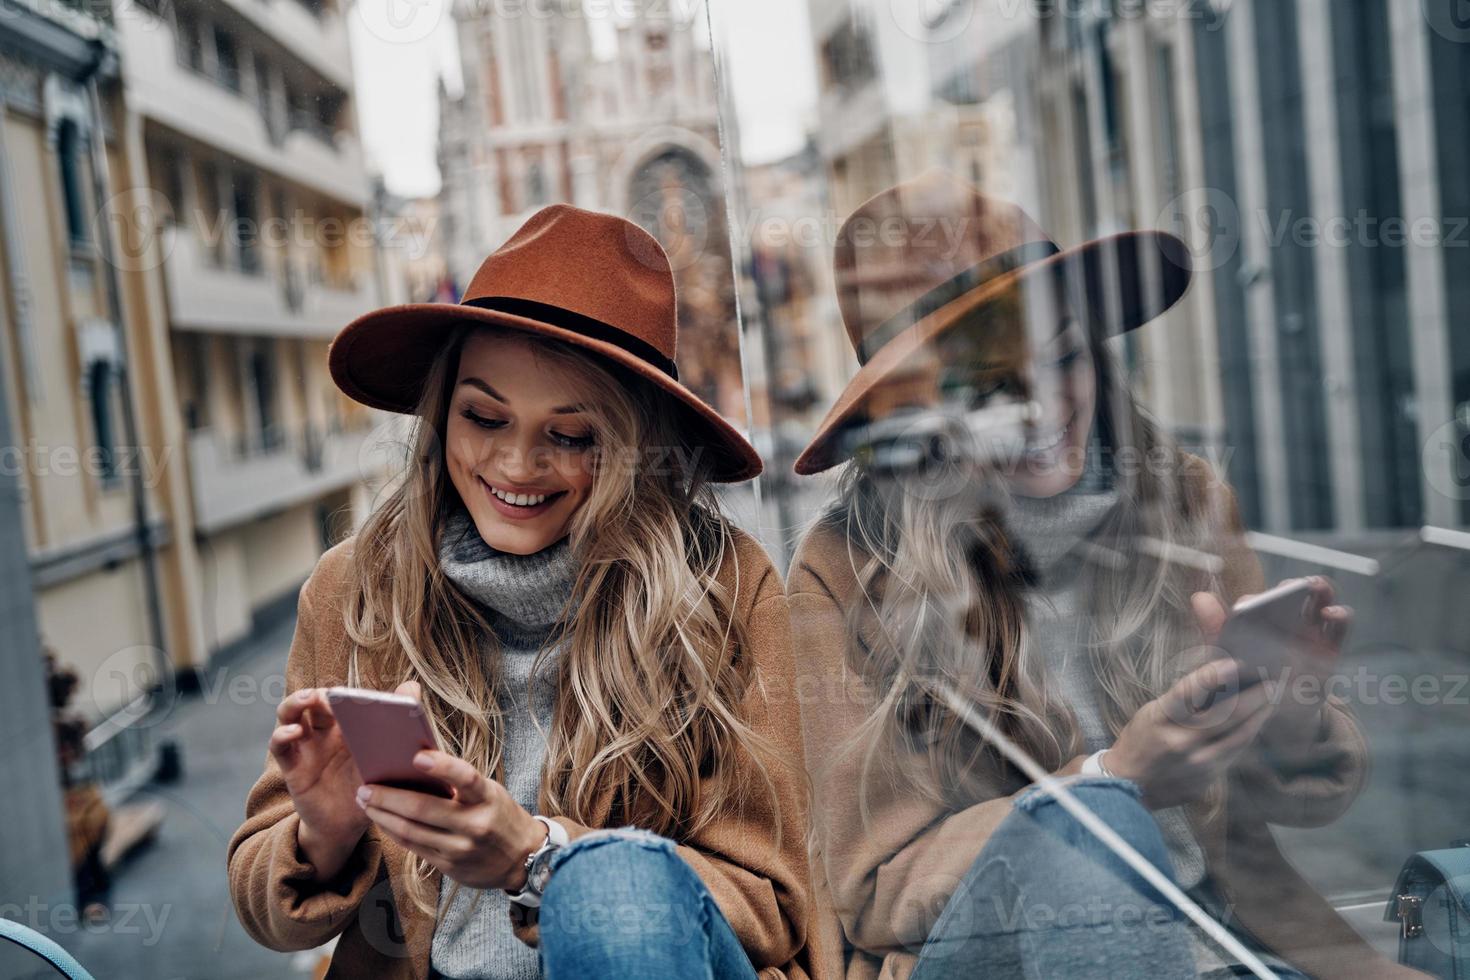 mantenerse conectado. atractiva mujer joven con sombrero y abrigo usando su teléfono inteligente mientras pasa tiempo sin preocupaciones en la ciudad foto